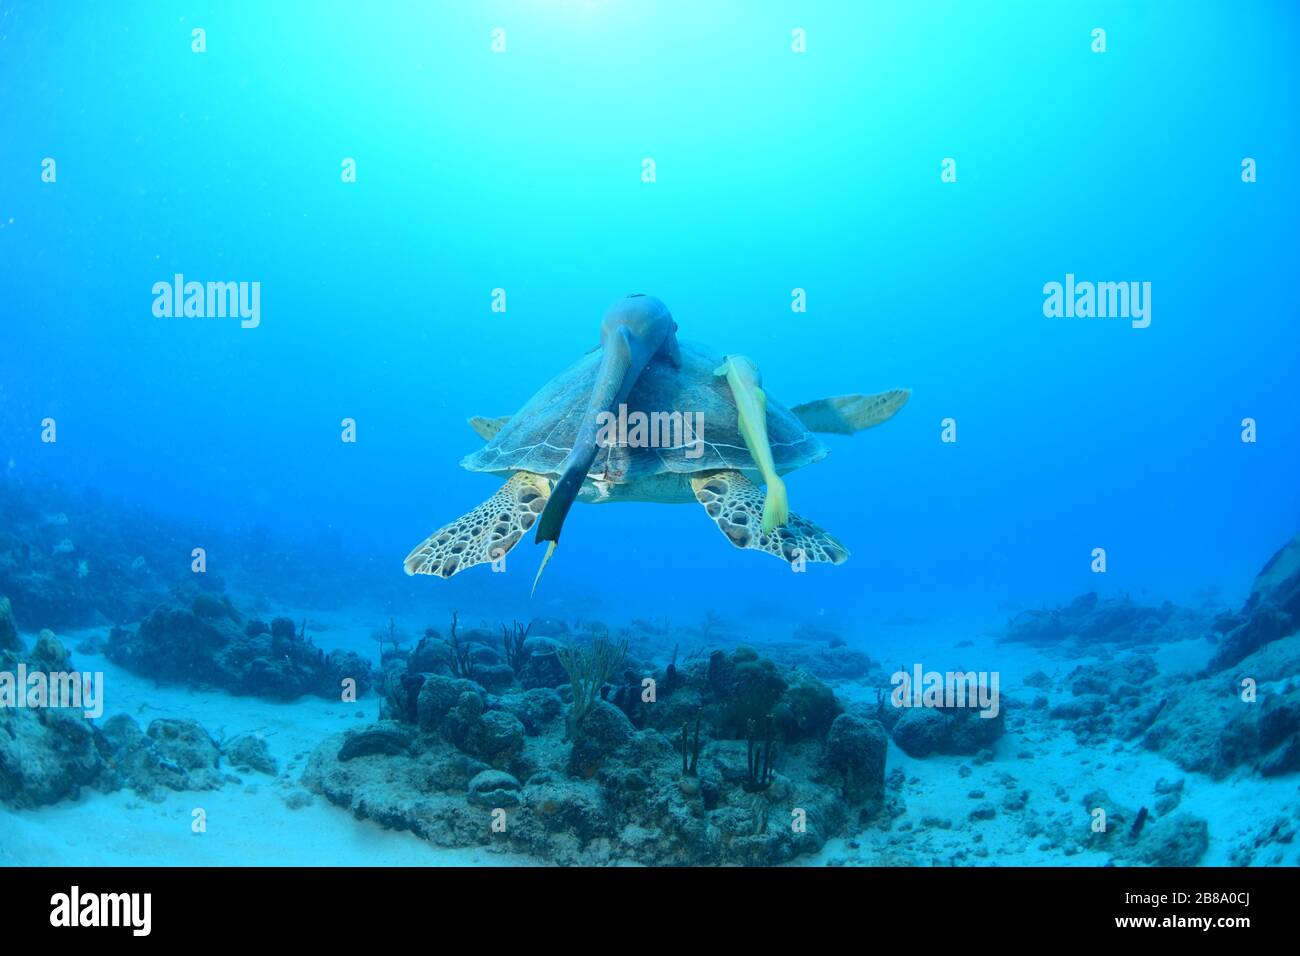 Imágenes submarinas de inmersiones, buceadores y vida marina mientras bucean en el Caribe alrededor de la isla de St. Maarten / St. Martin Foto de stock